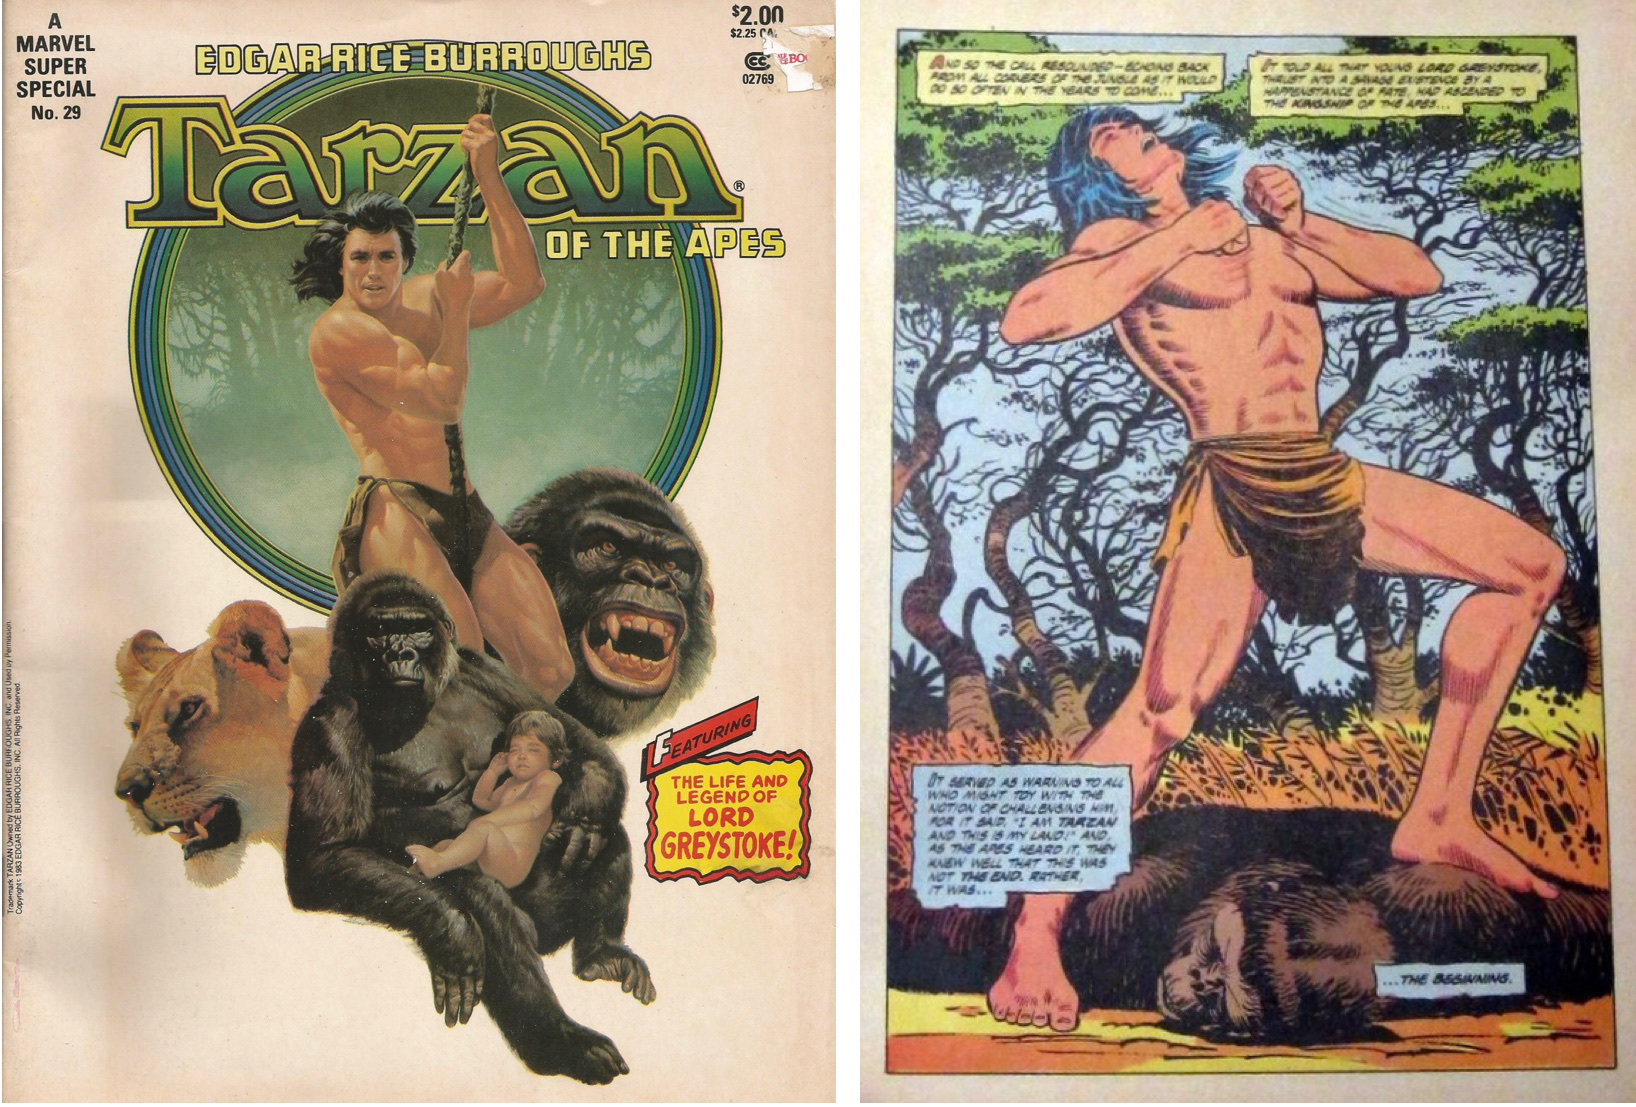 Marvel Super Special #29 med Tarzan.